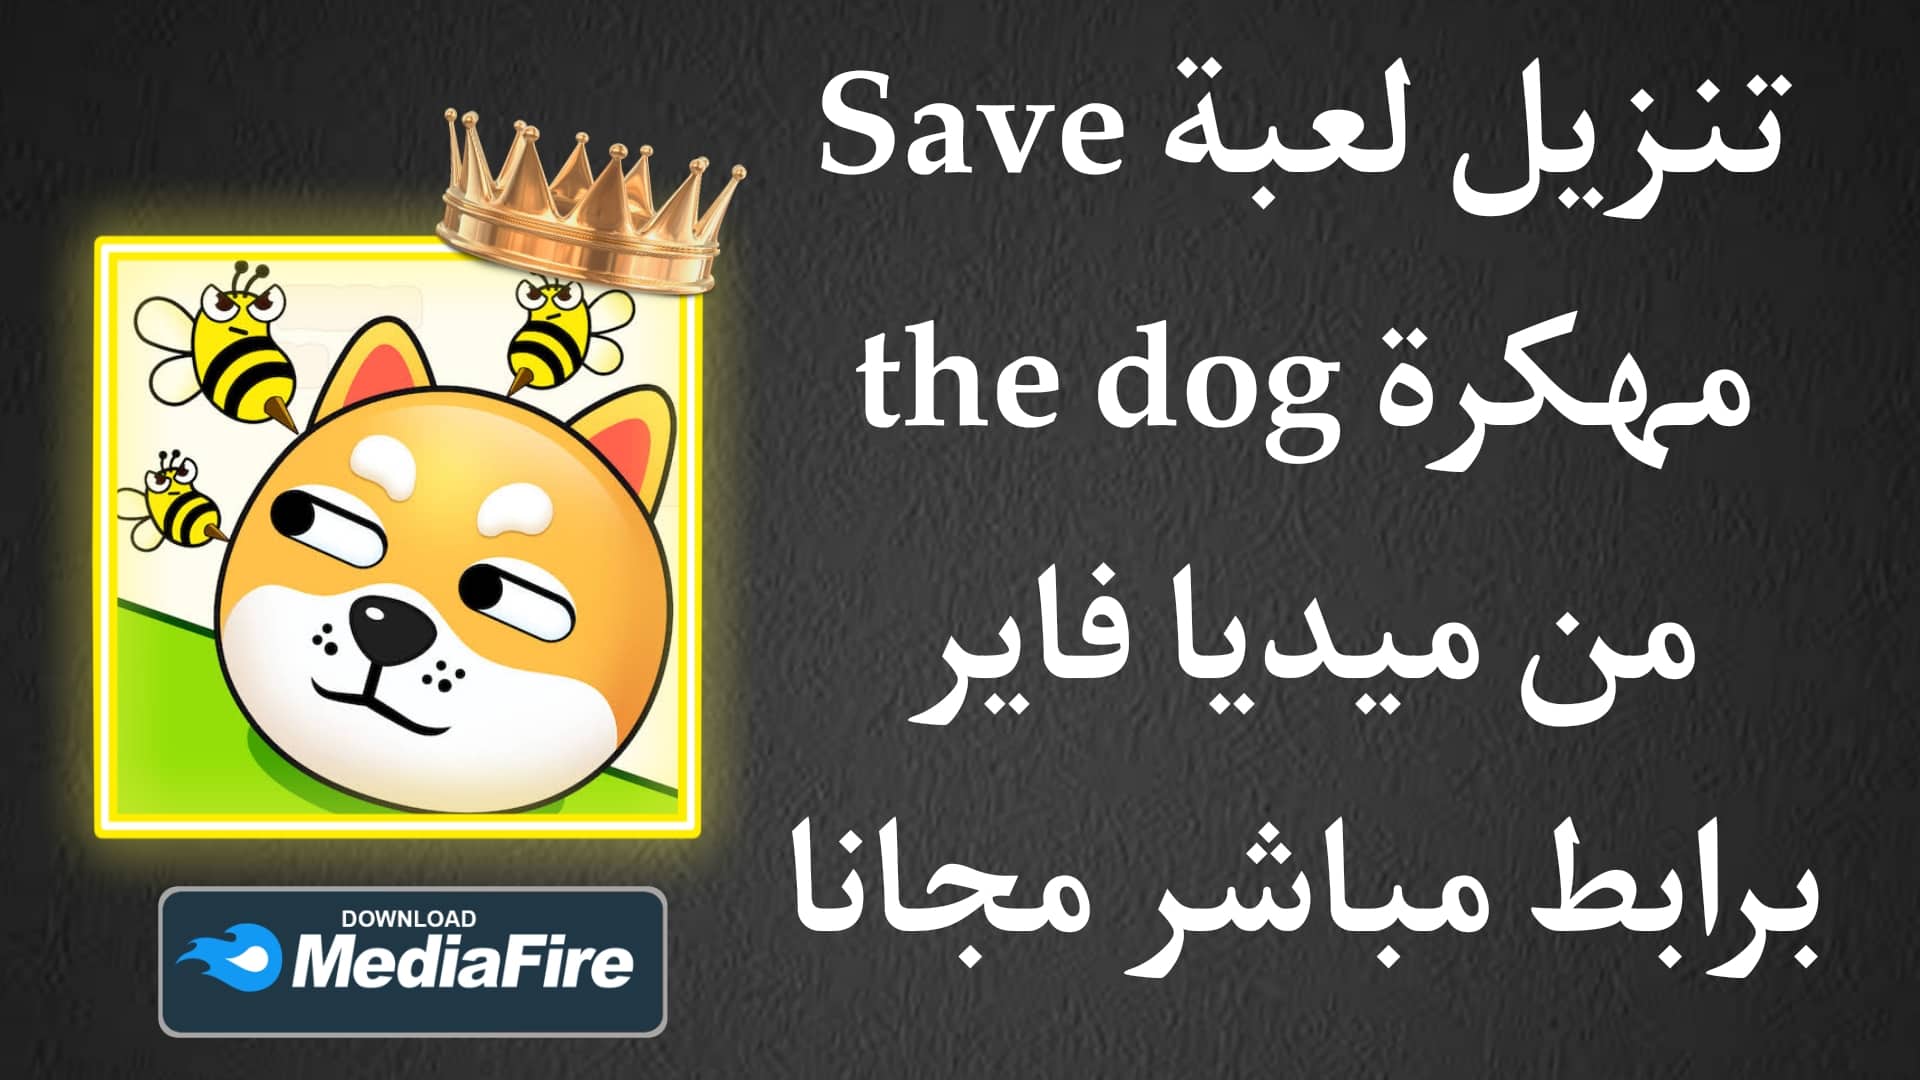 تنزيل لعبة Save the dog مهكرة من ميديا فاير للاندرويد والايفون